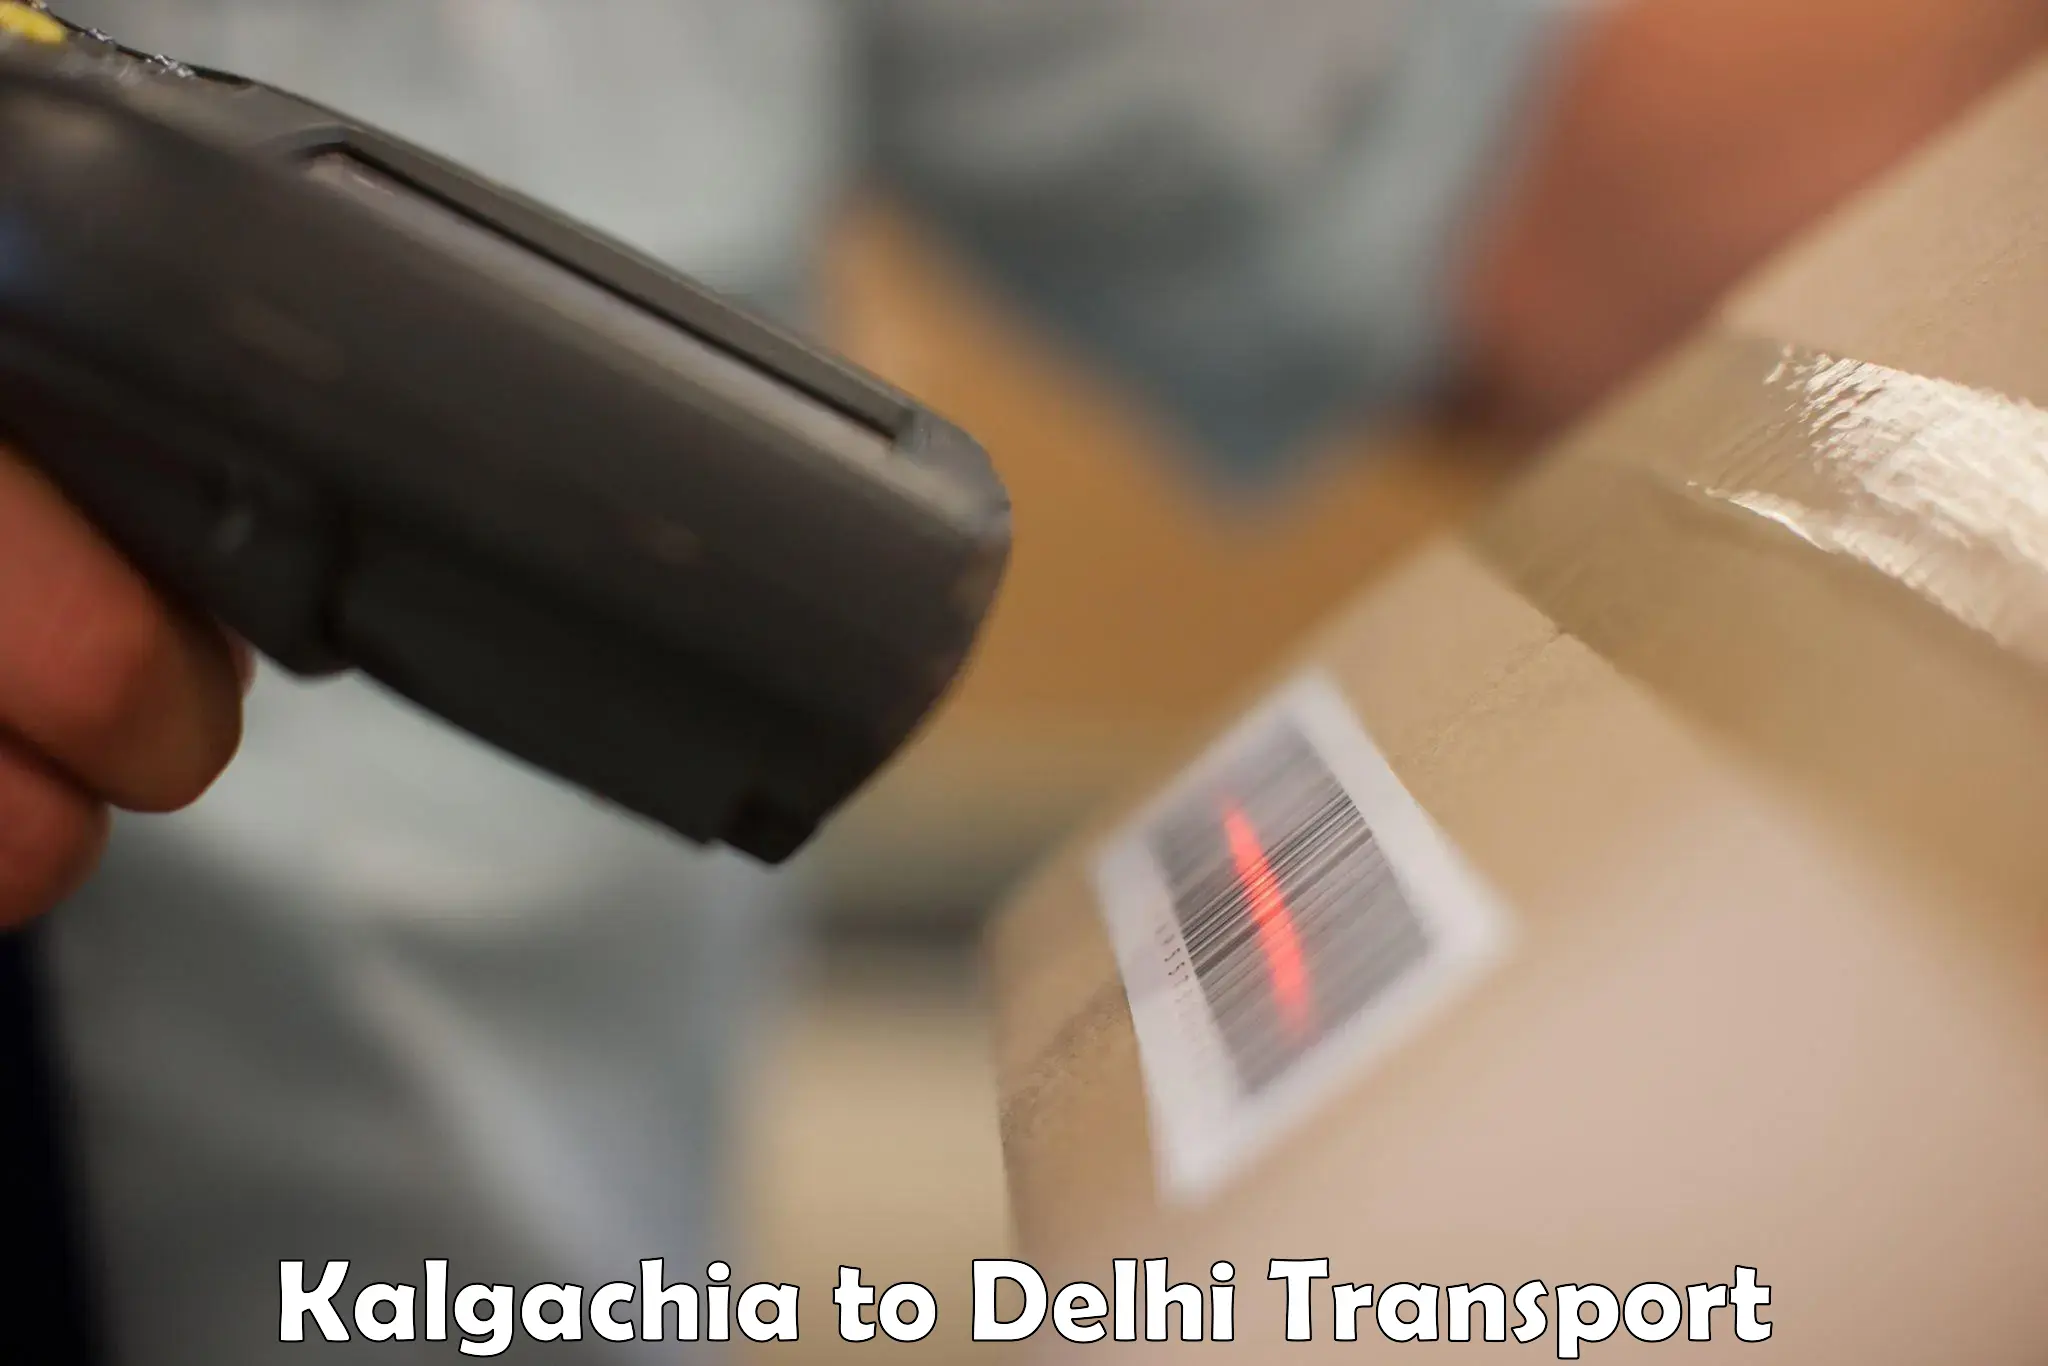 Land transport services Kalgachia to IIT Delhi